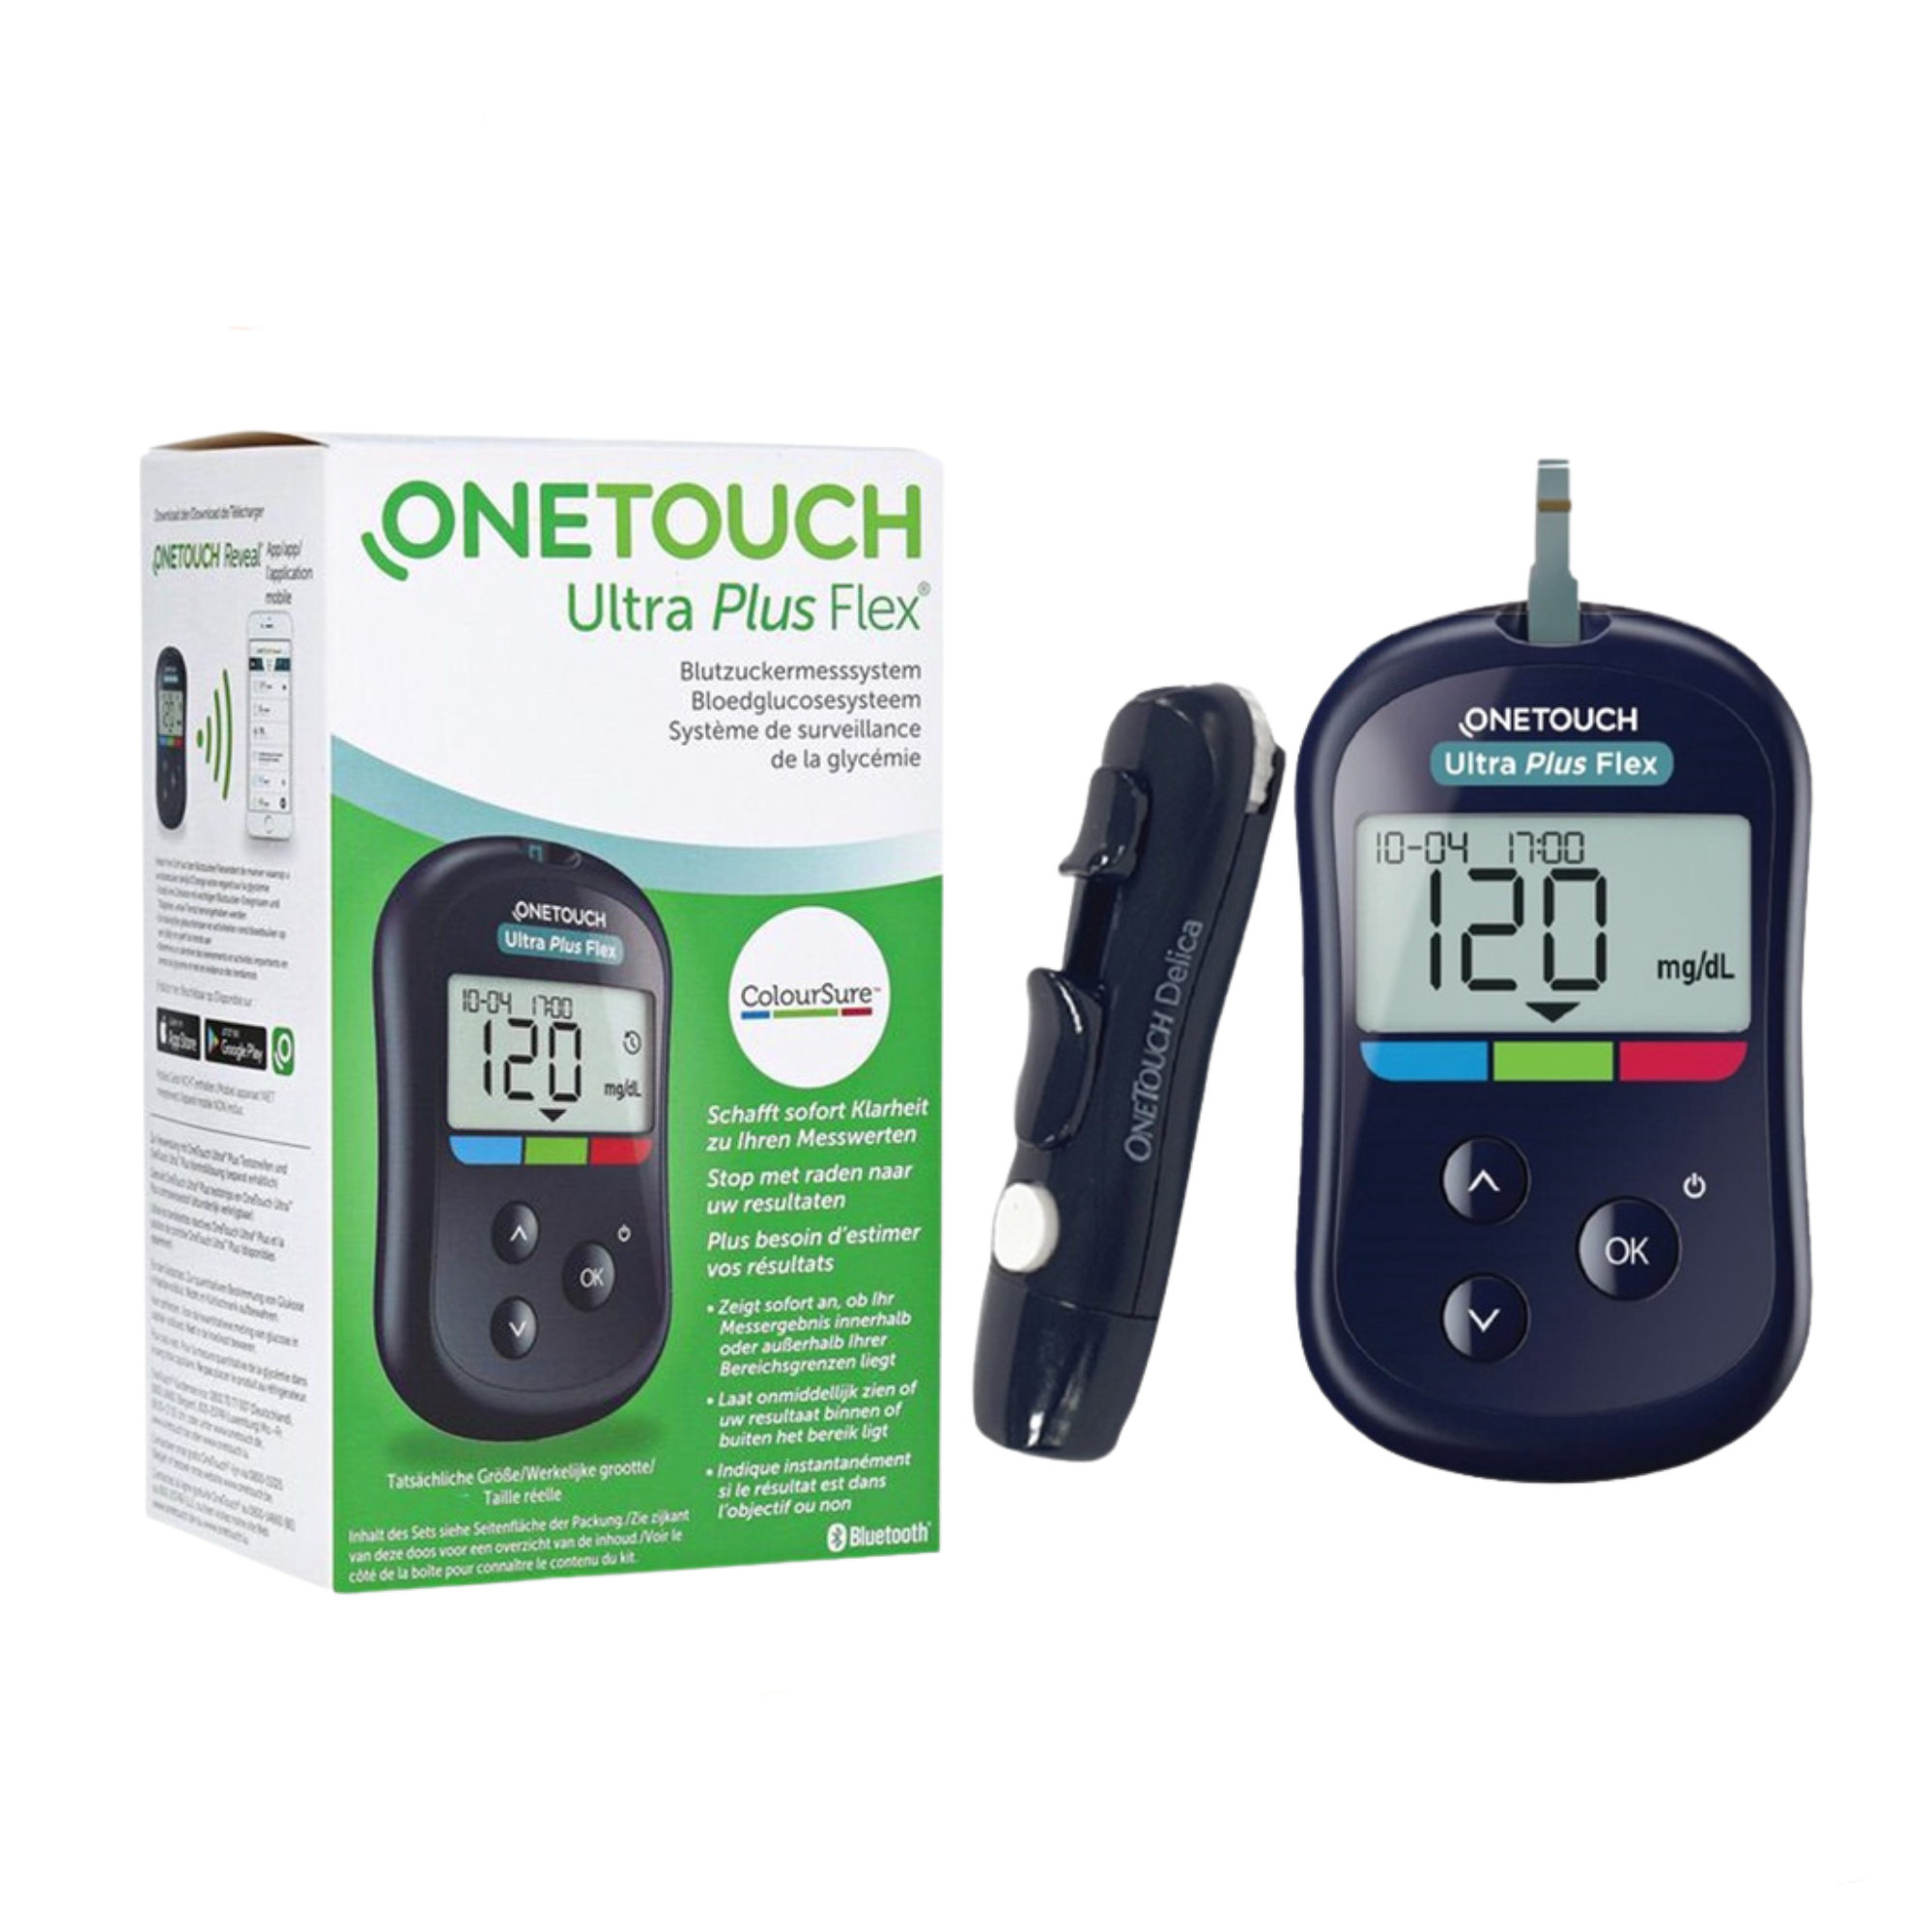 Máy đo đường huyết tiểu đường One Touch Ultra Plus Flex (Onetouch) Loại xịn, bền, hay dùng tại các phòng khám